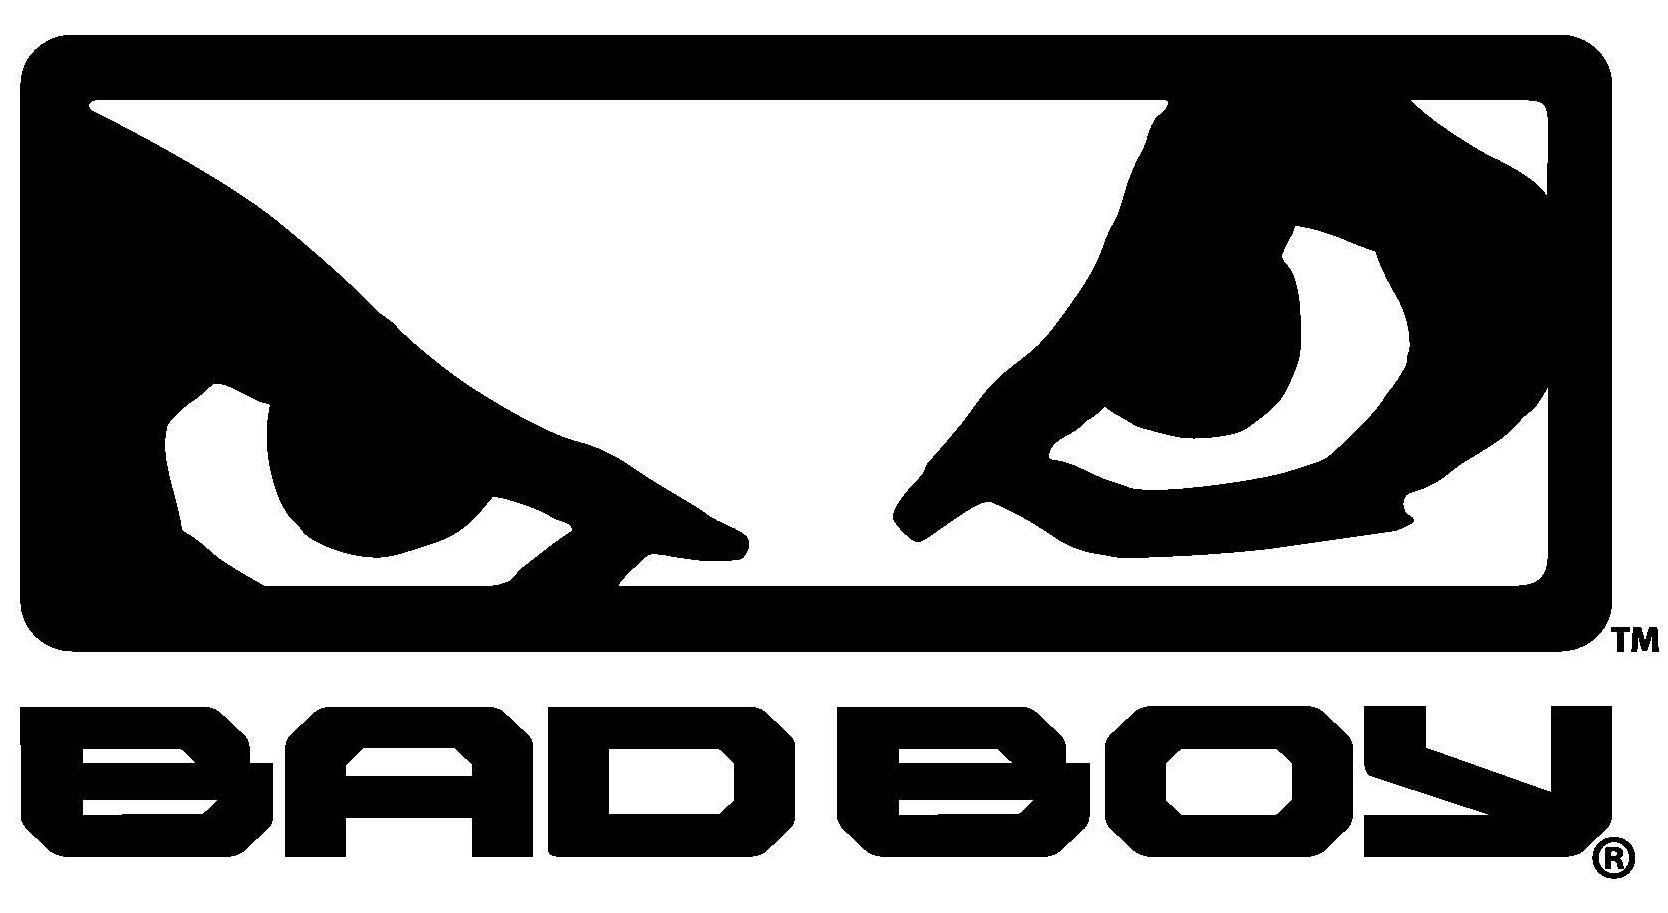 Bad Boy Club Logo #3 Die Cut Vinyl Decal High Quality Outdoor Sticker Car  Bike | eBay